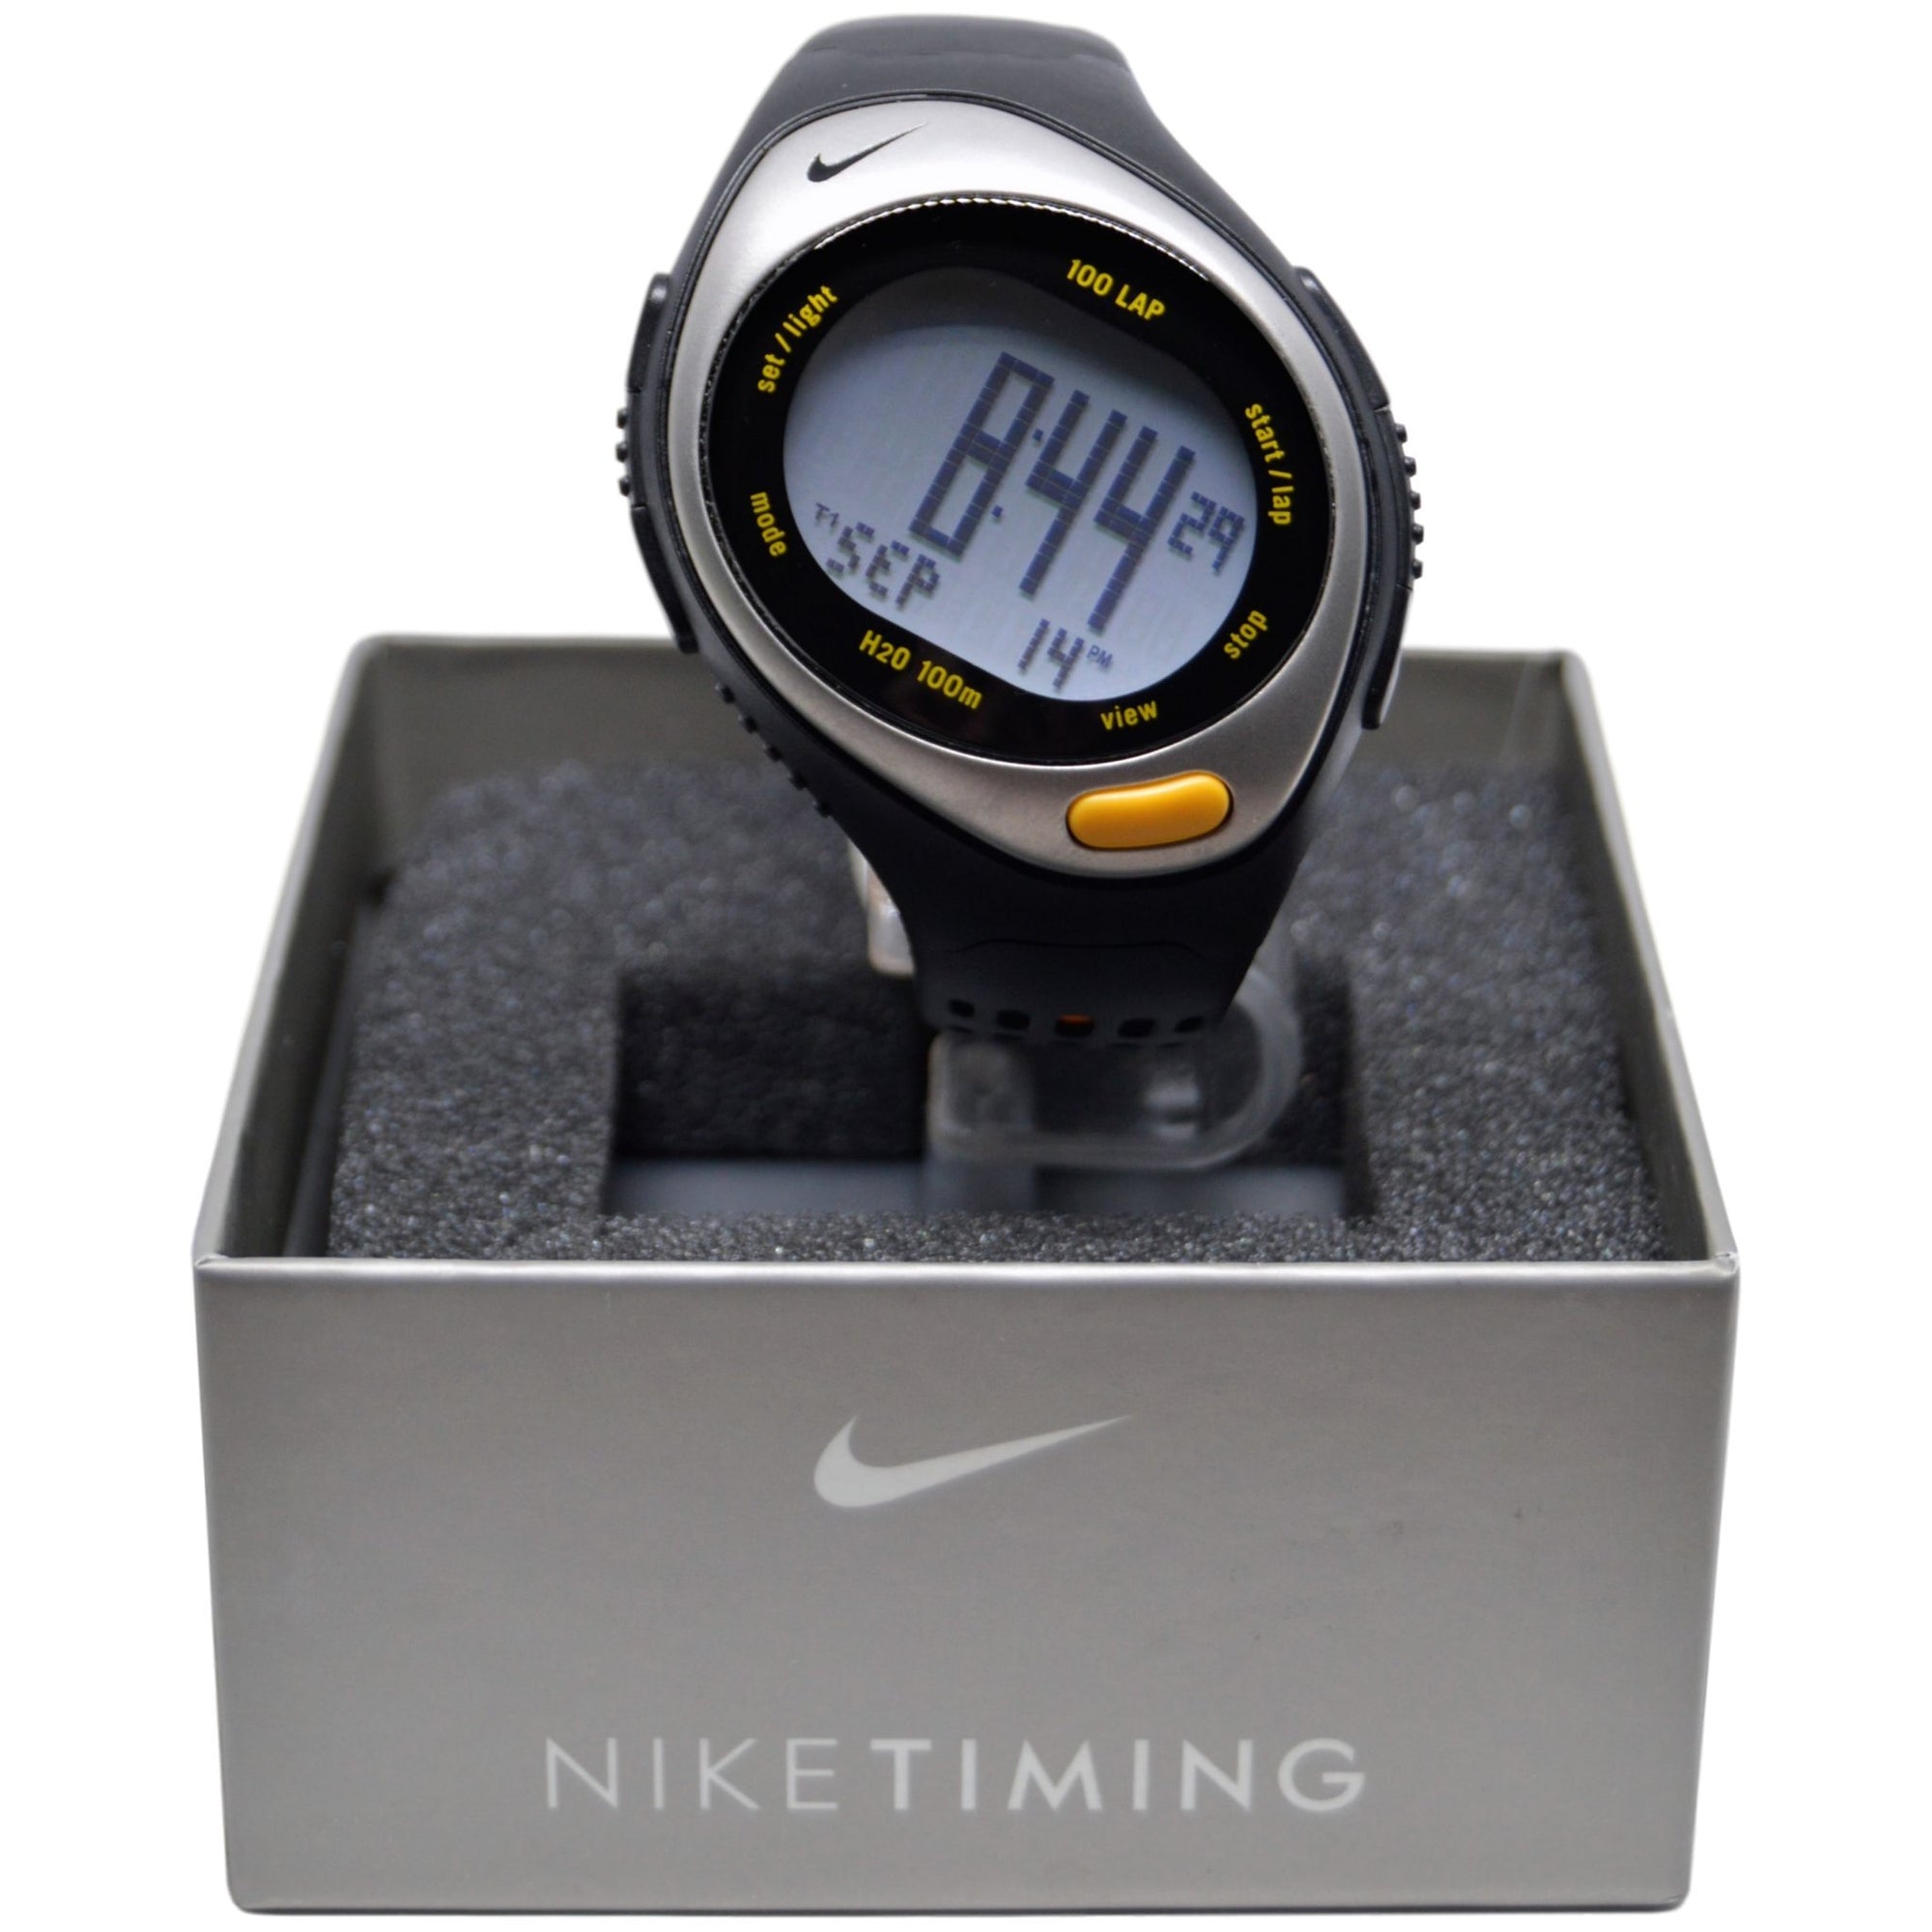 comedia Hacia atrás sequía Nike Triax Speed 100 Super - Yellow Watch WR0127-002 | Rare Find | -  Elevn:59